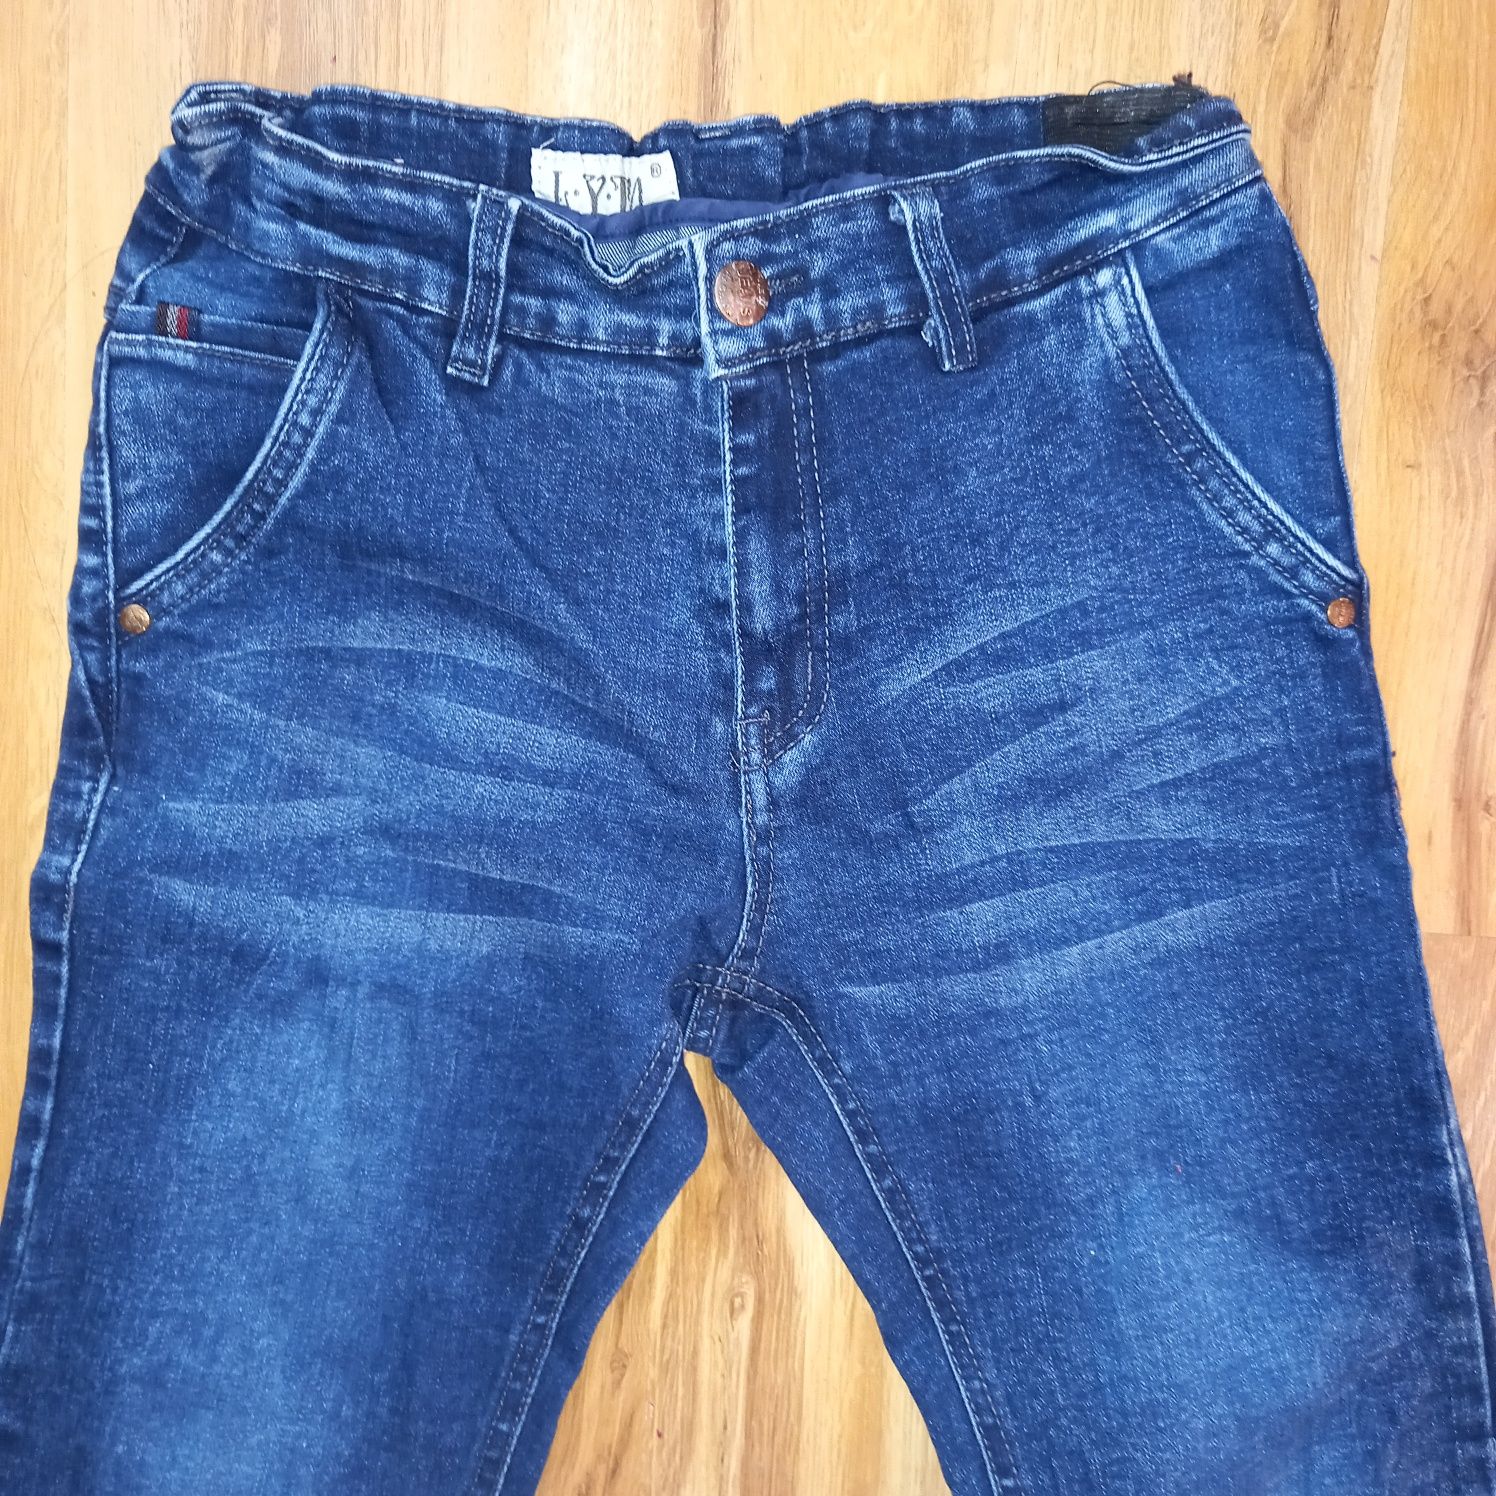 Porządne jeansy chłopięce r 146/152 bdb